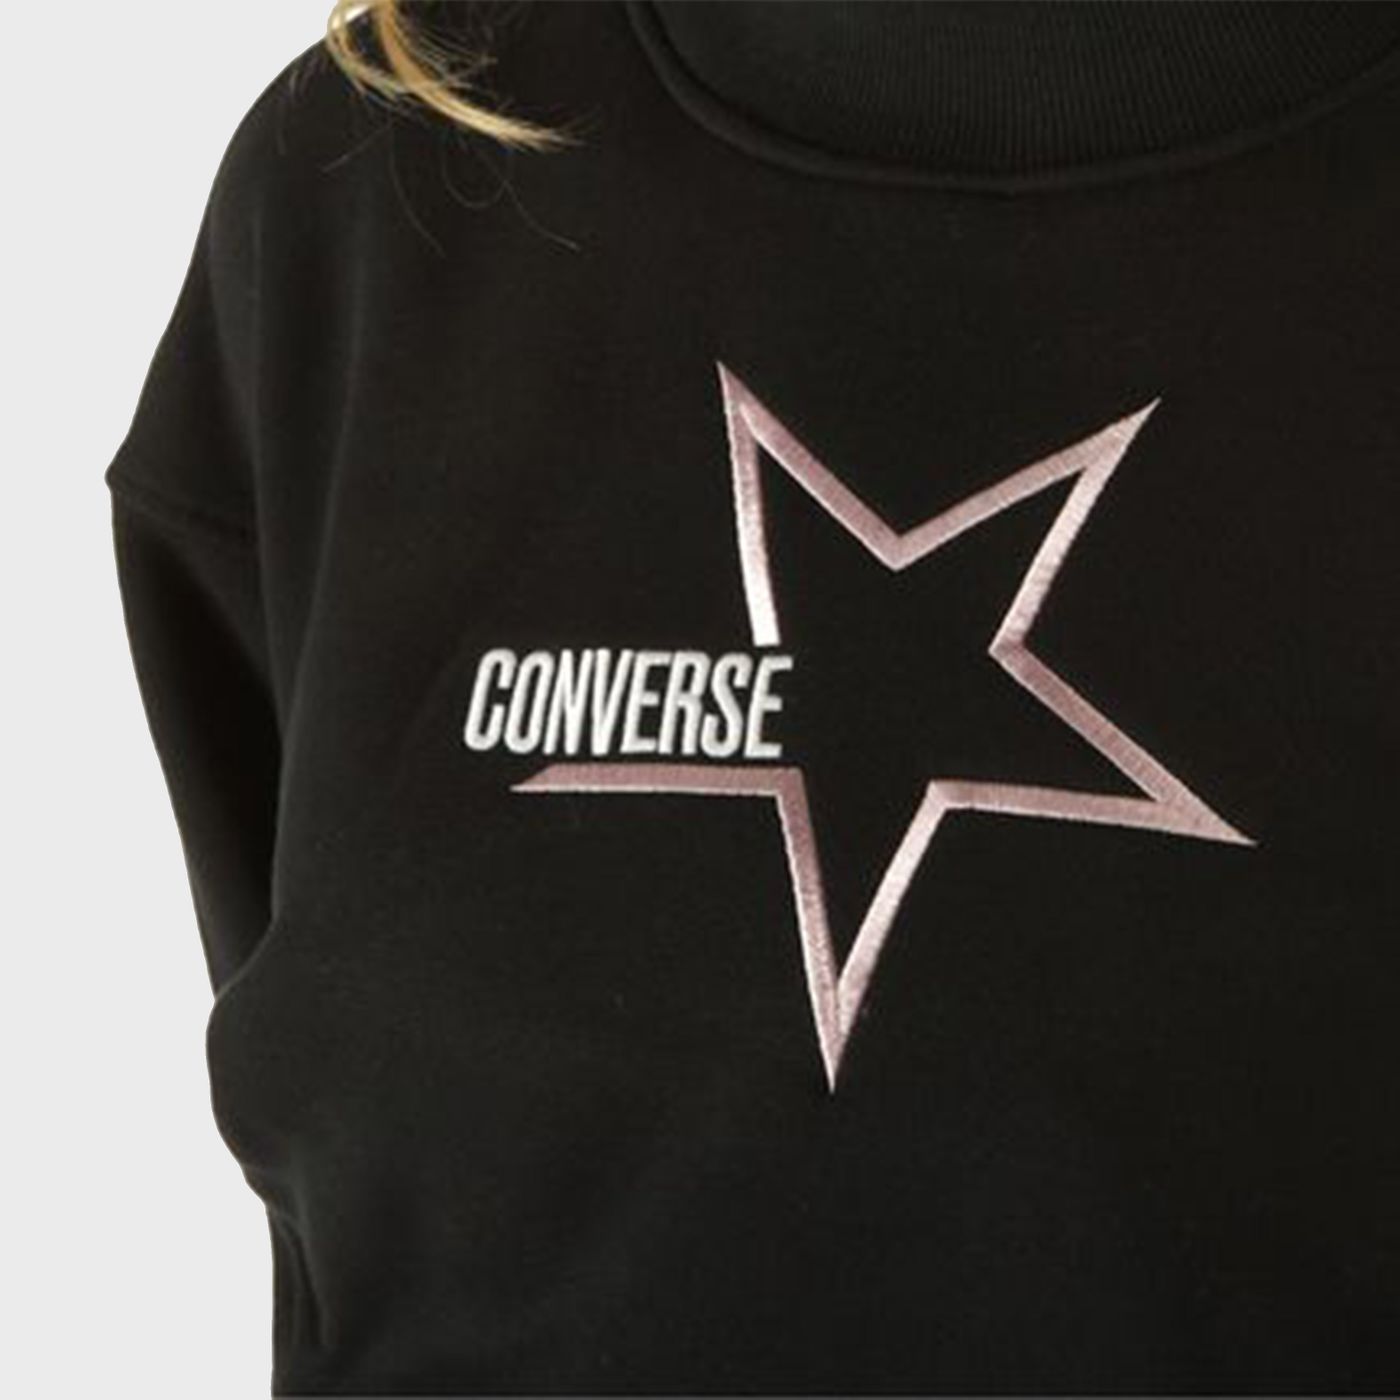 10023328 - Knitwear - Converse